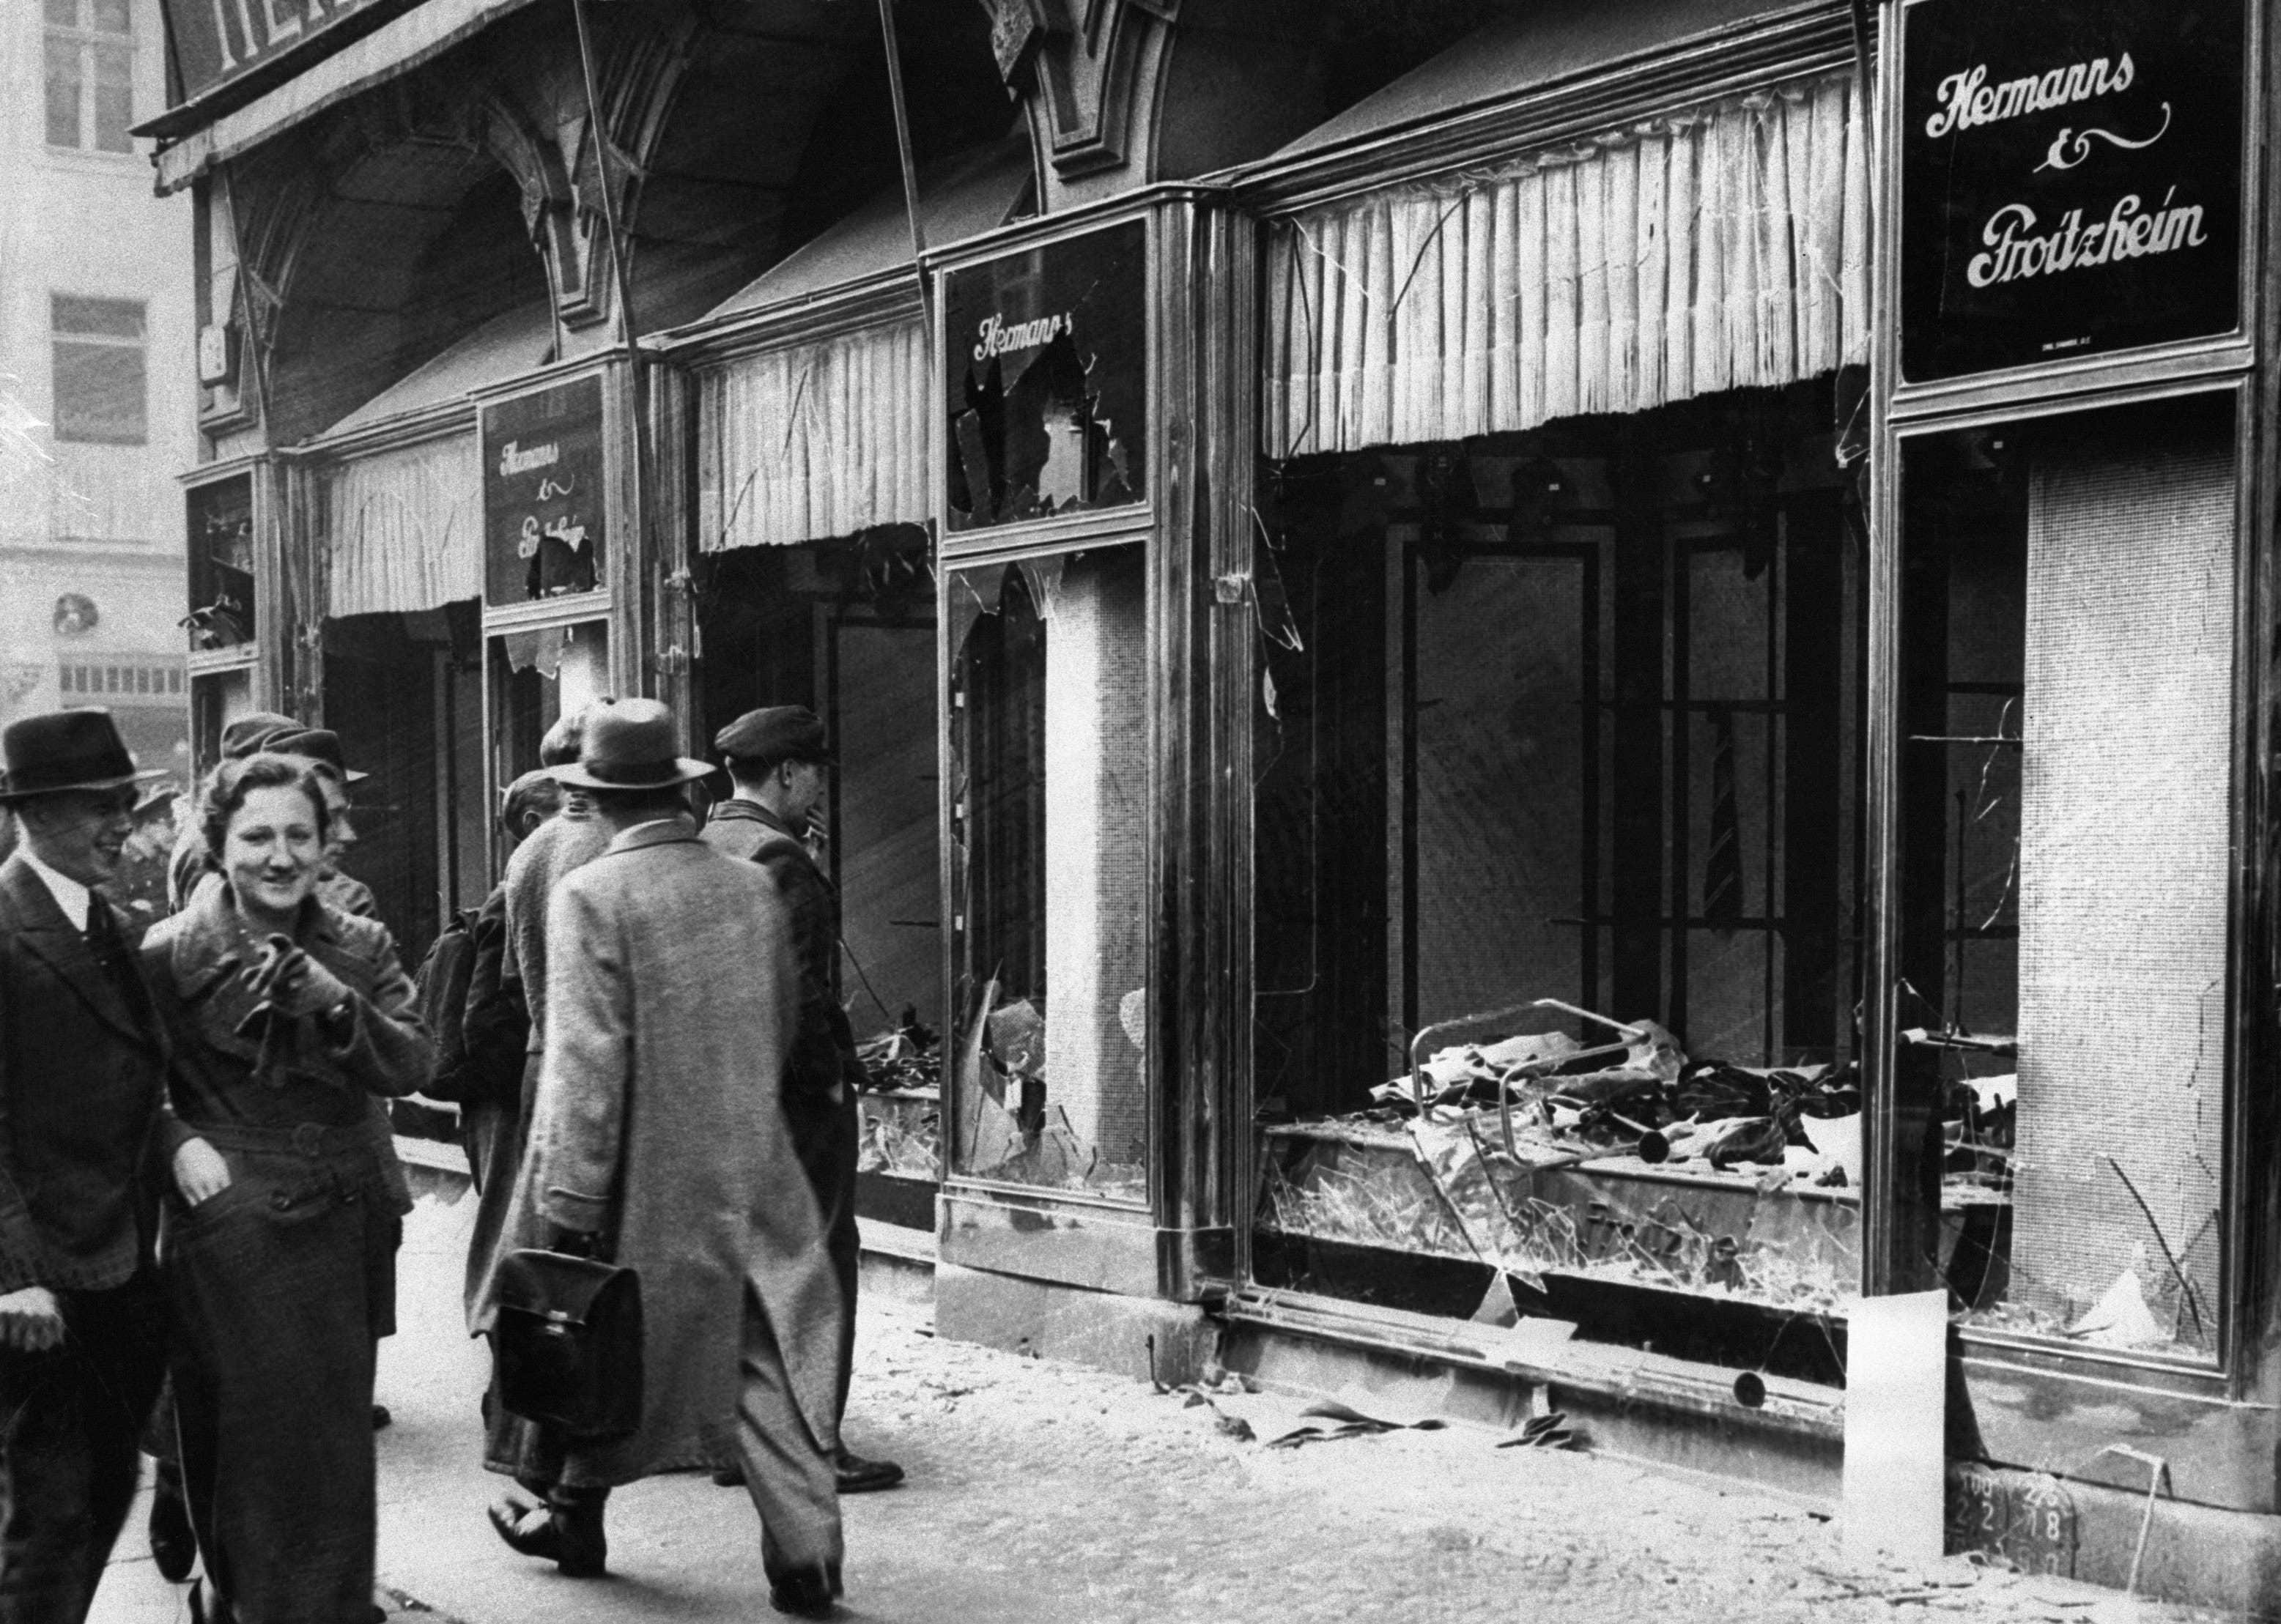 Jewish business destroyed during Kristallnacht, 1938